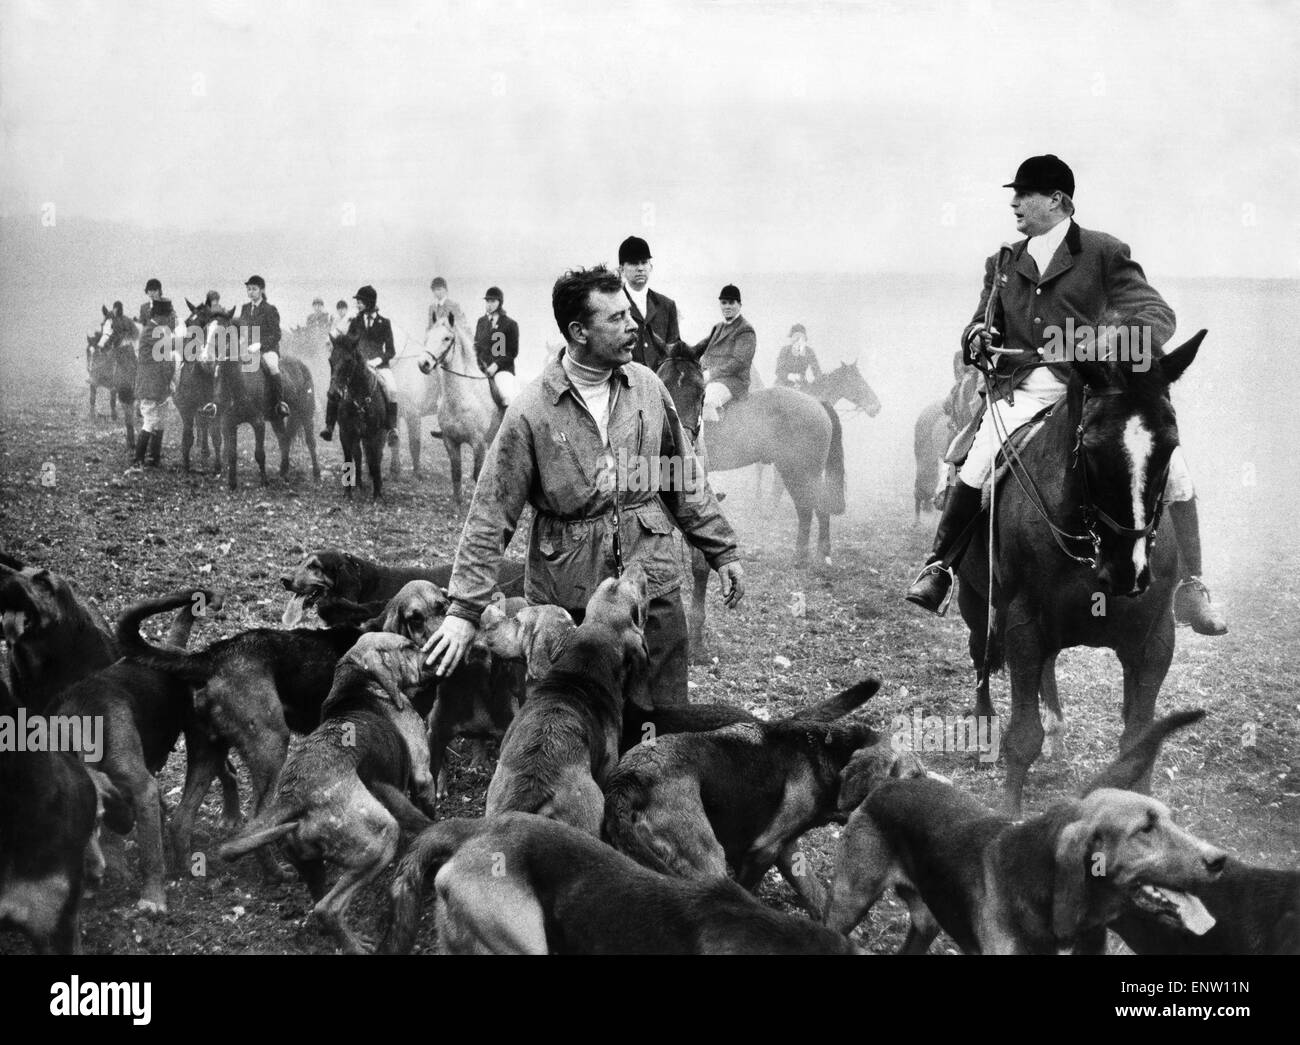 Ziehen Sie Jagd: Die Jagdhunde aufzuspüren endlich ihre "Fuchs" in Form von Henry Edwards, die noch in einigen 7. Januar 1973 ausgeführt wird Stockfoto